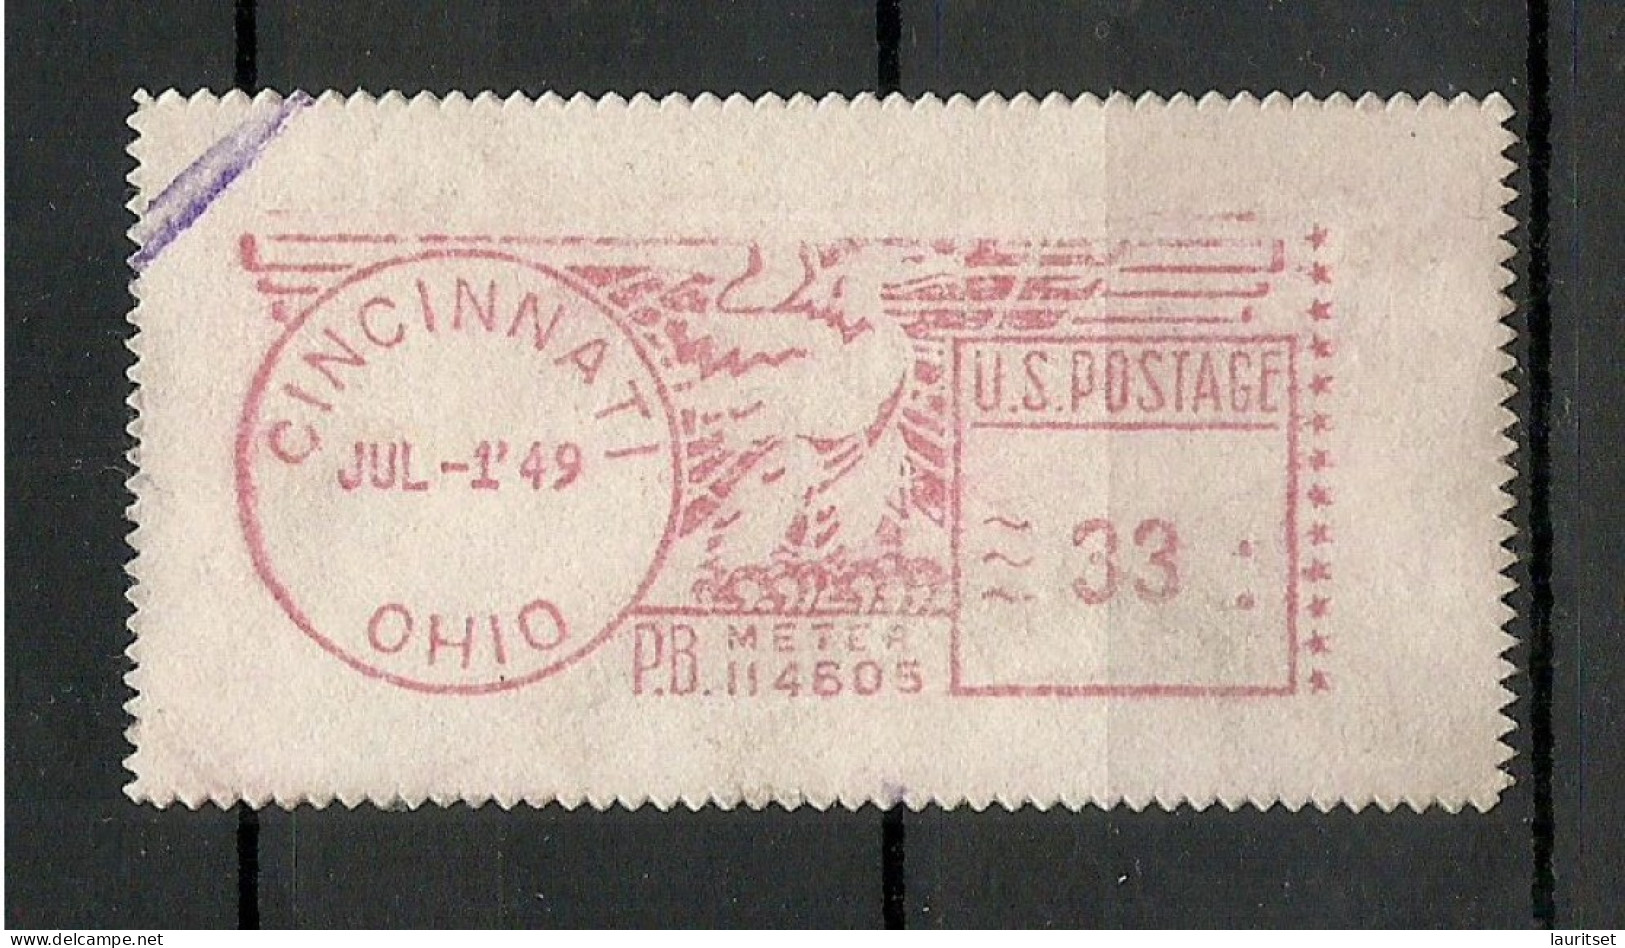 USA 1949 Cincinnati Ohio Meter Stamp - Used Stamps